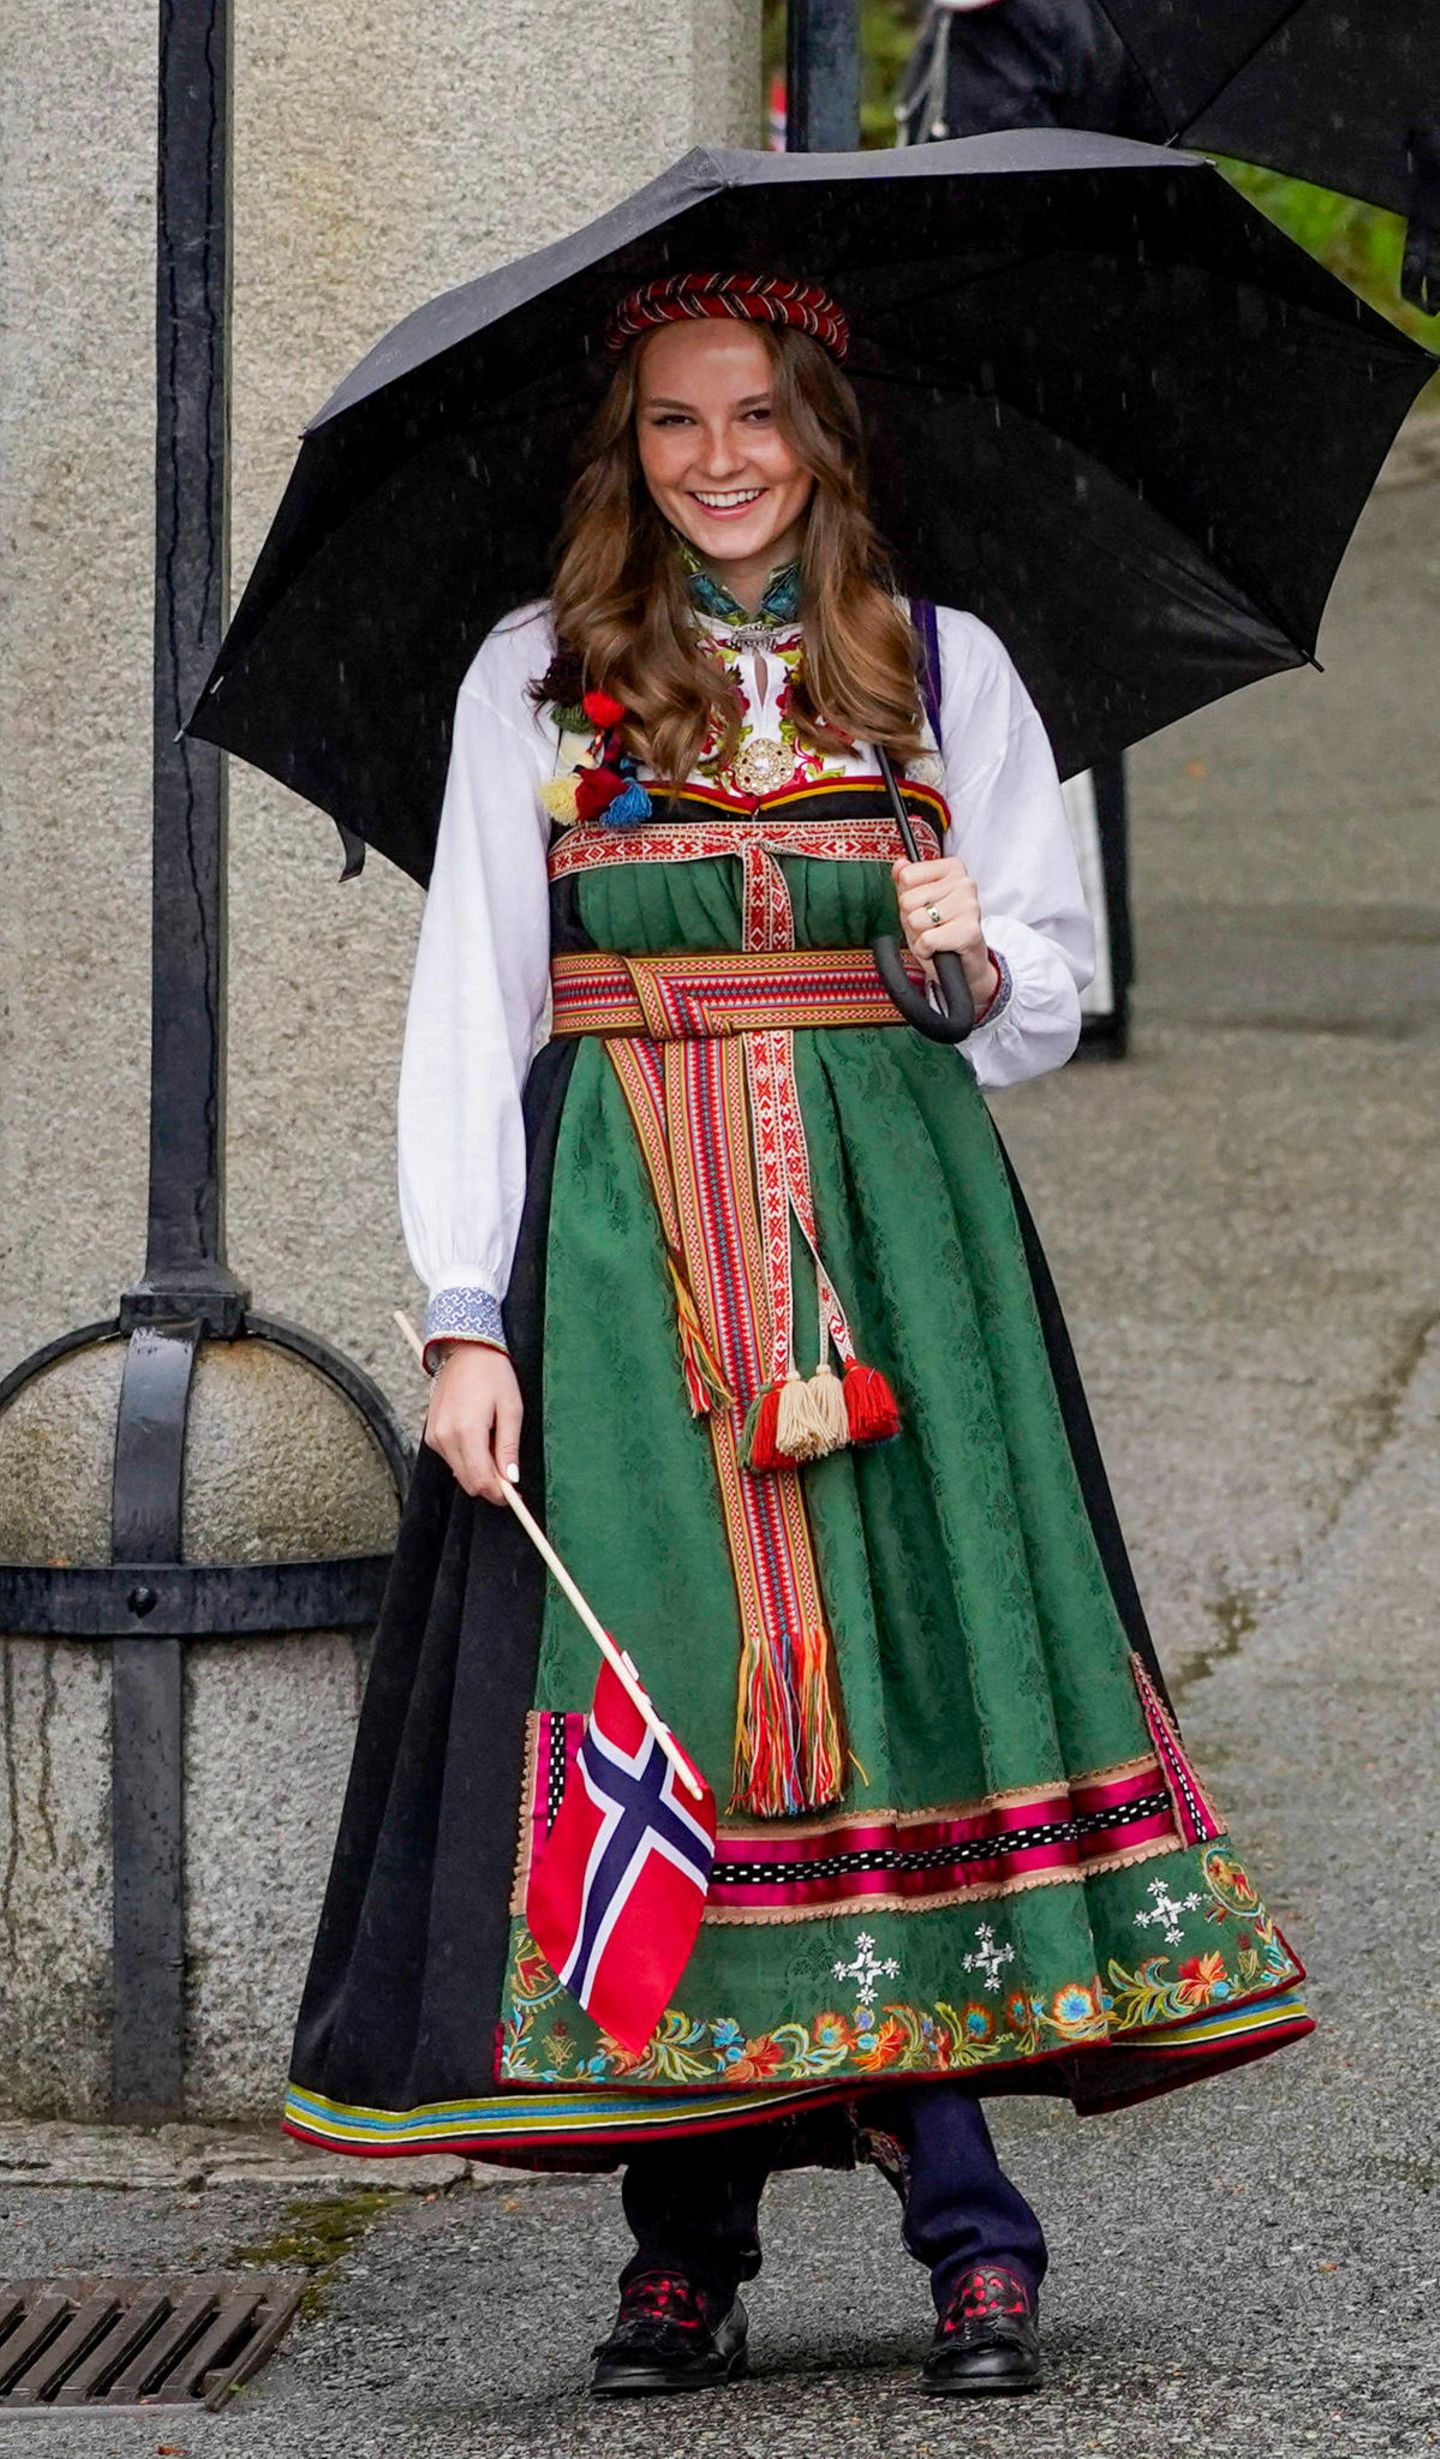 Am 17. Mai feiert Norwegen seinen Nationalfeiertag, wobei die Feier in diesem Jahr aufgrund der Pandemie kleiner ausfällt. Doch die Outfits der norwegischen Königsfamilie sind mindestens so opulent wie die Jahre zuvor. Besonders hübsch anzusehen ist das Kleid der 17-jährigen Royal. Die Robe trägt den Namen "Bunad" und ist ein Geschenk von ihren Großeltern Königin Sonja und König Harald. Das traditionelle Kleidungsstück stammt aus Aust-Telemark und erinnert an die Trachten, die schon um das Jahr 1810 von den norwegischen Frauen getragen wurden.